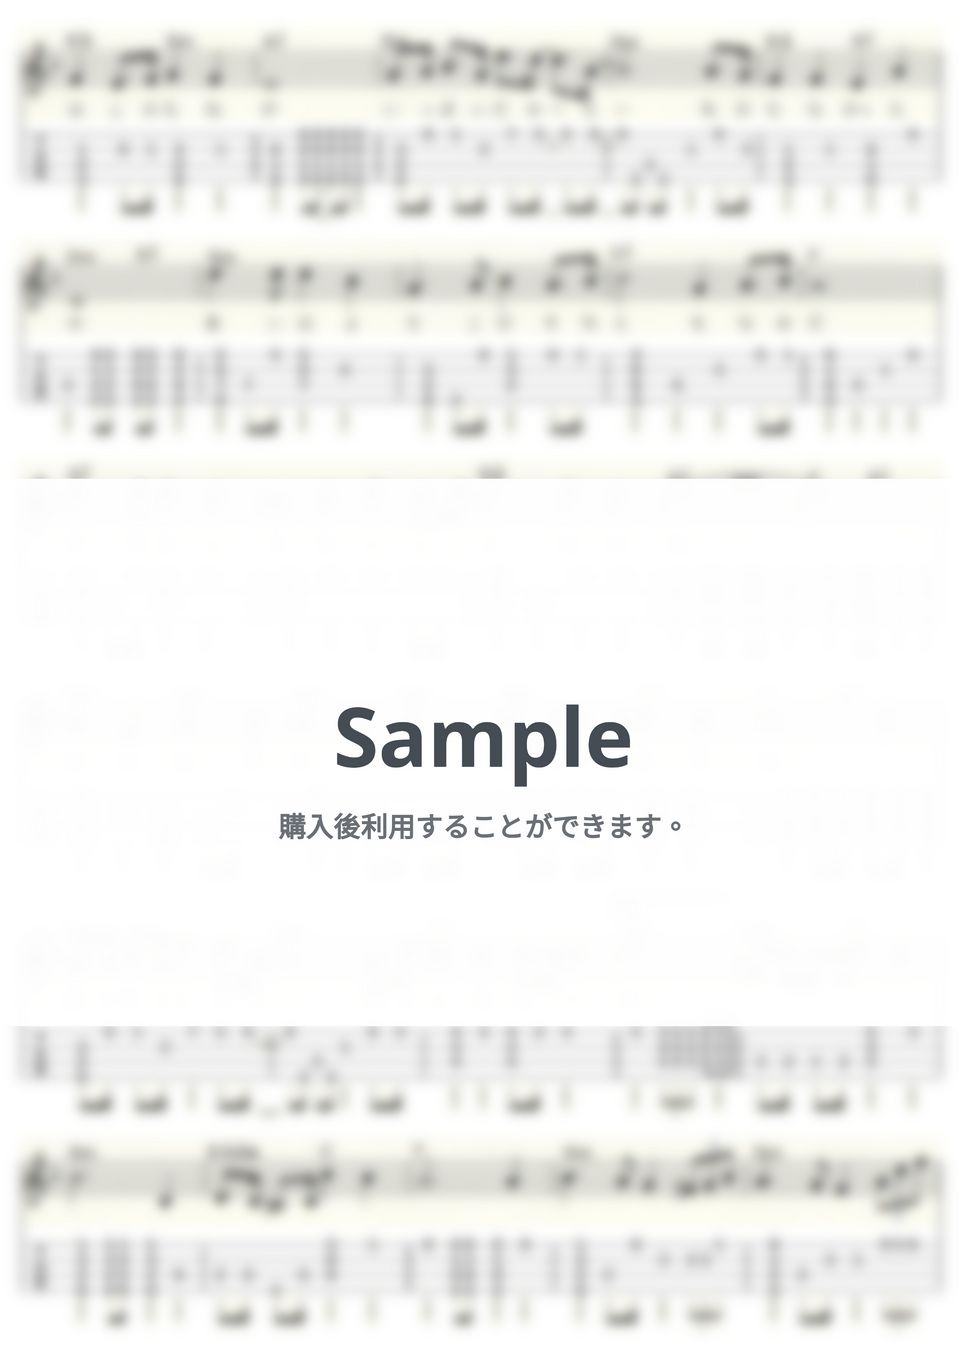 天地真理 - 若葉のささやき (ｳｸﾚﾚｿﾛ/Low-G/中級) by ukulelepapa